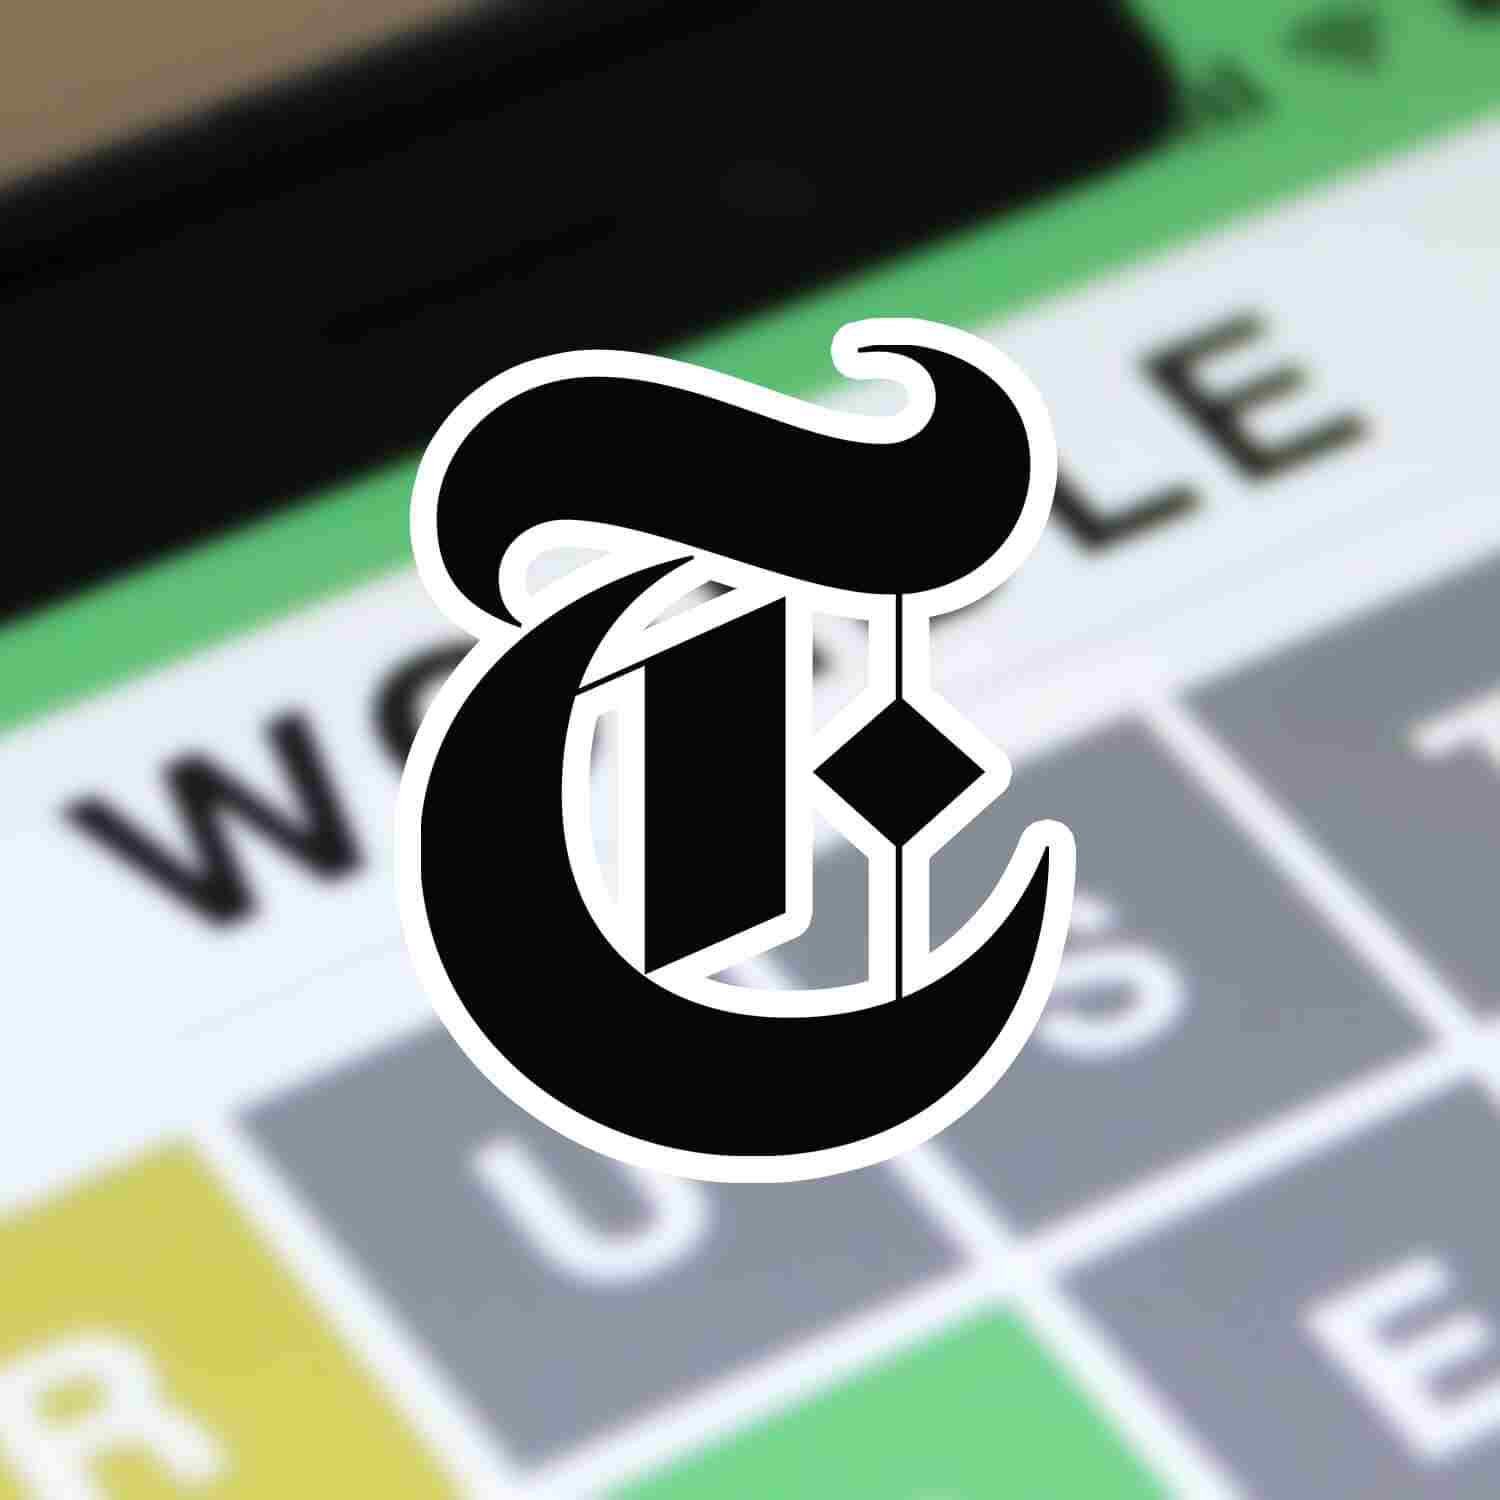 El New York Times adquiere un juego de navegador por más de un millón de dólares